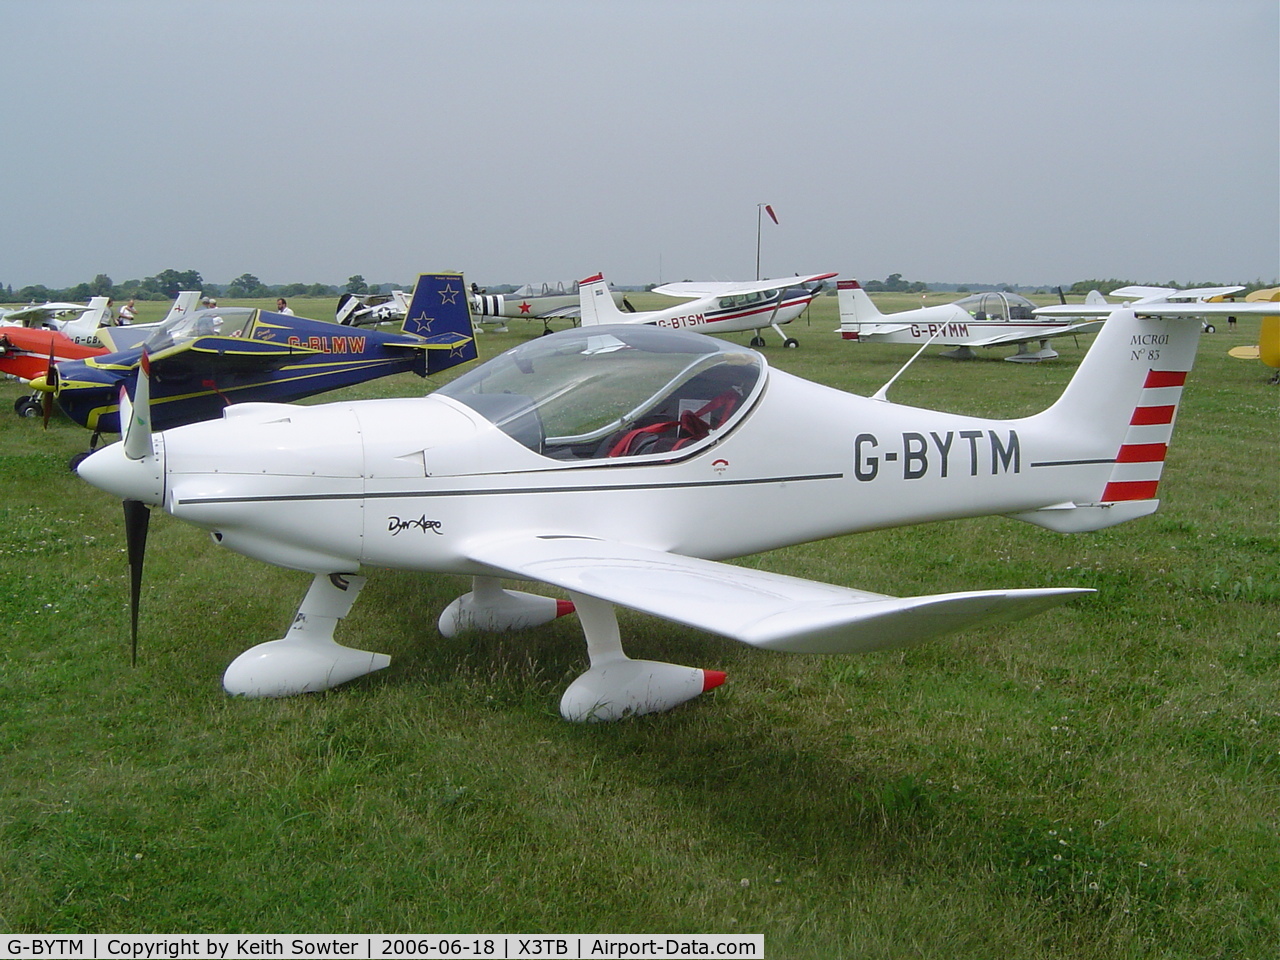 G-BYTM, 2000 Dyn'Aero MCR-01 UL C/N PFA 301-13440, Breckland Strut Fly-in Tibenham